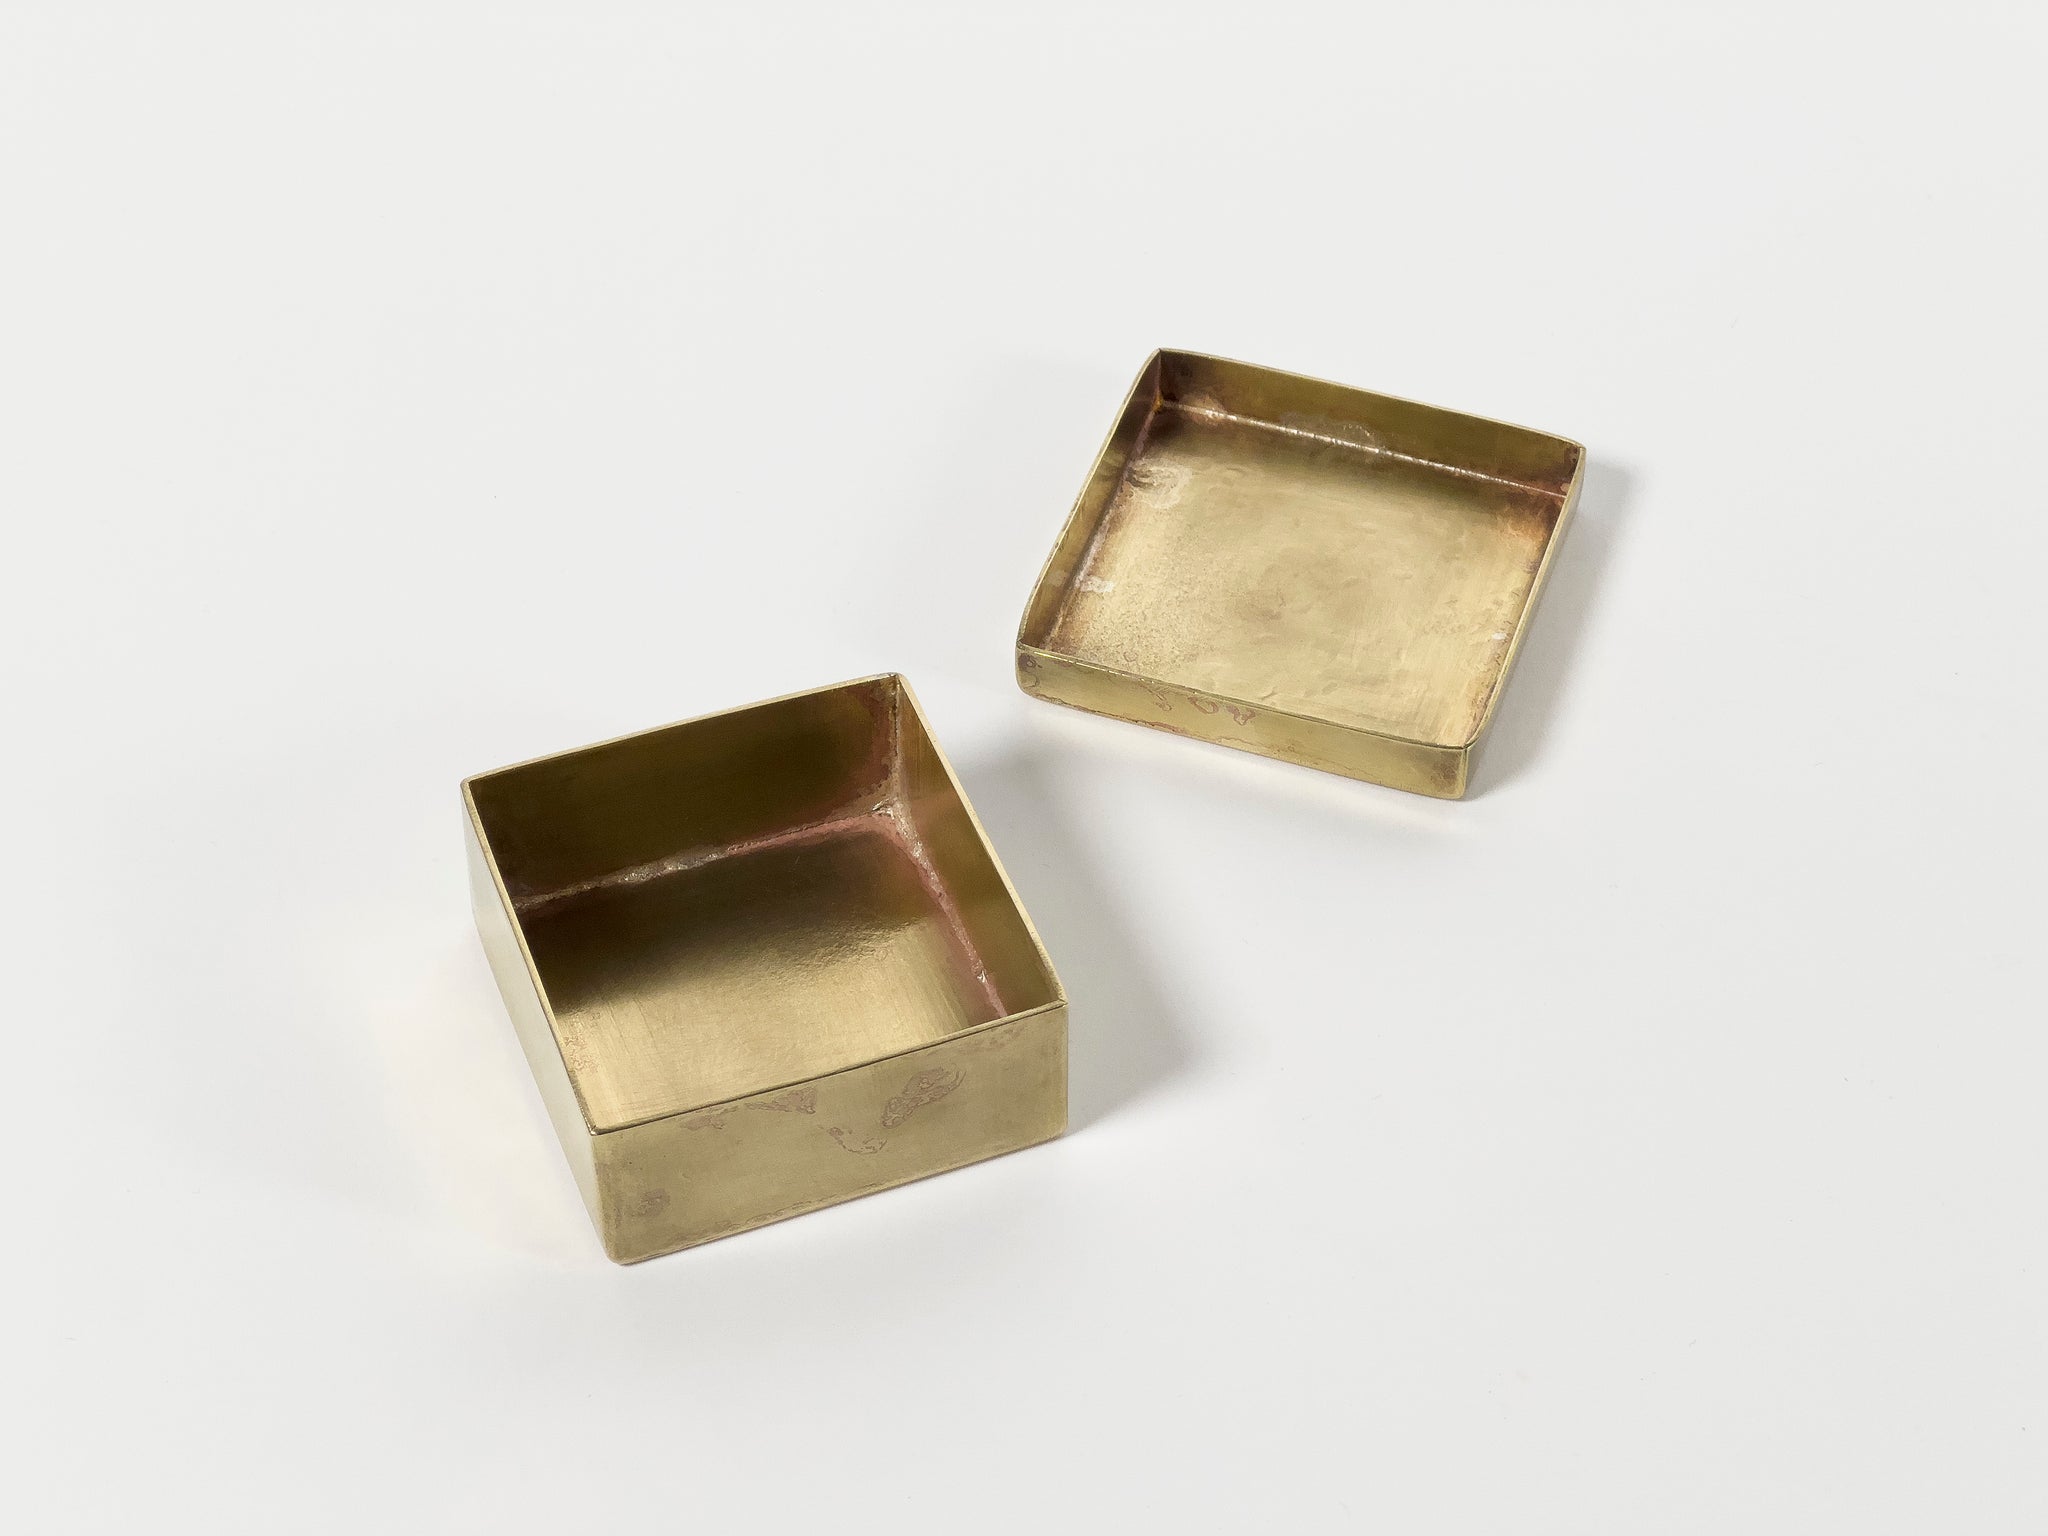 Small Square Brass Box